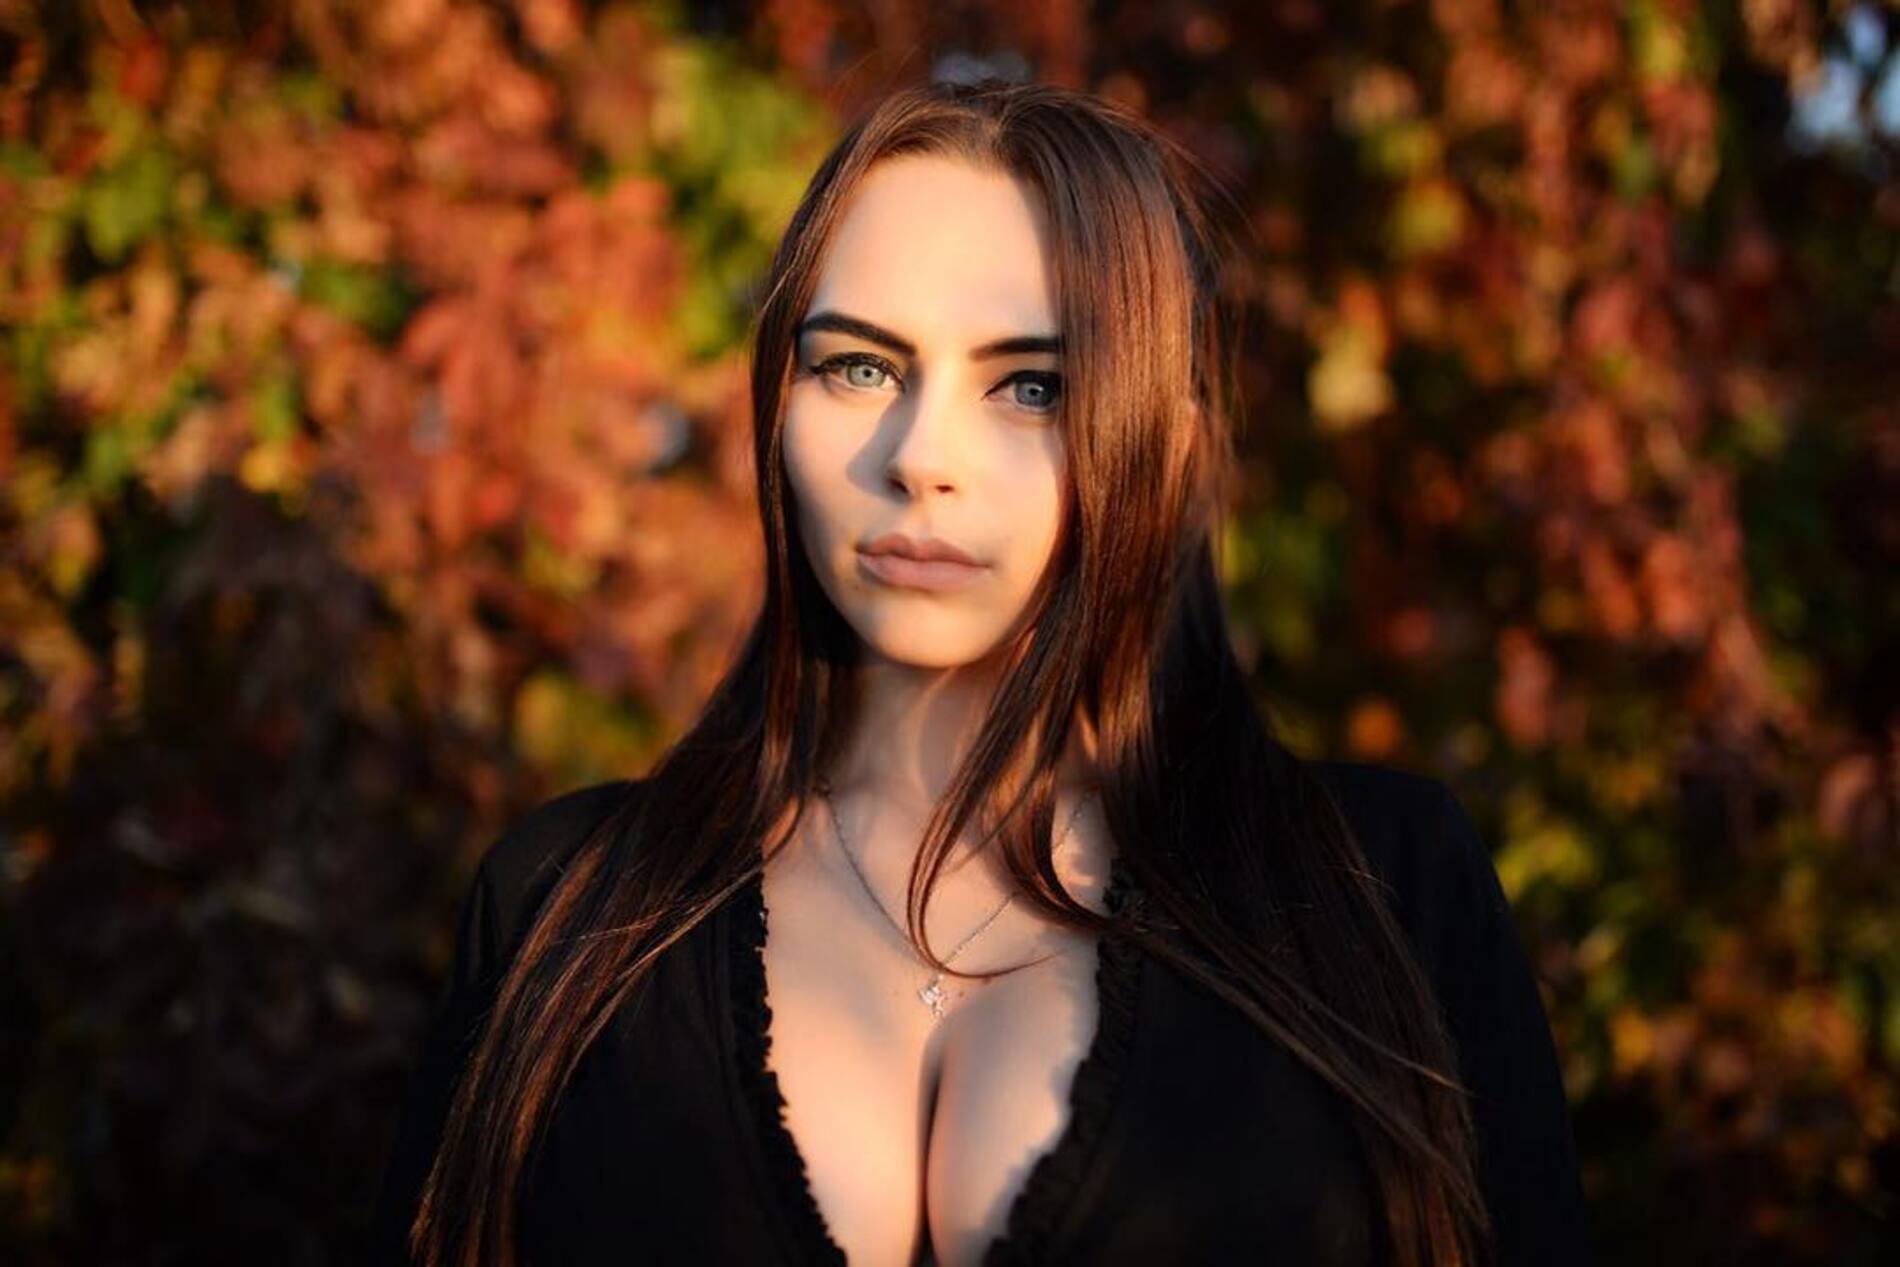 Михалина mihalina Новаковская — спортсменка, блогер, красавица